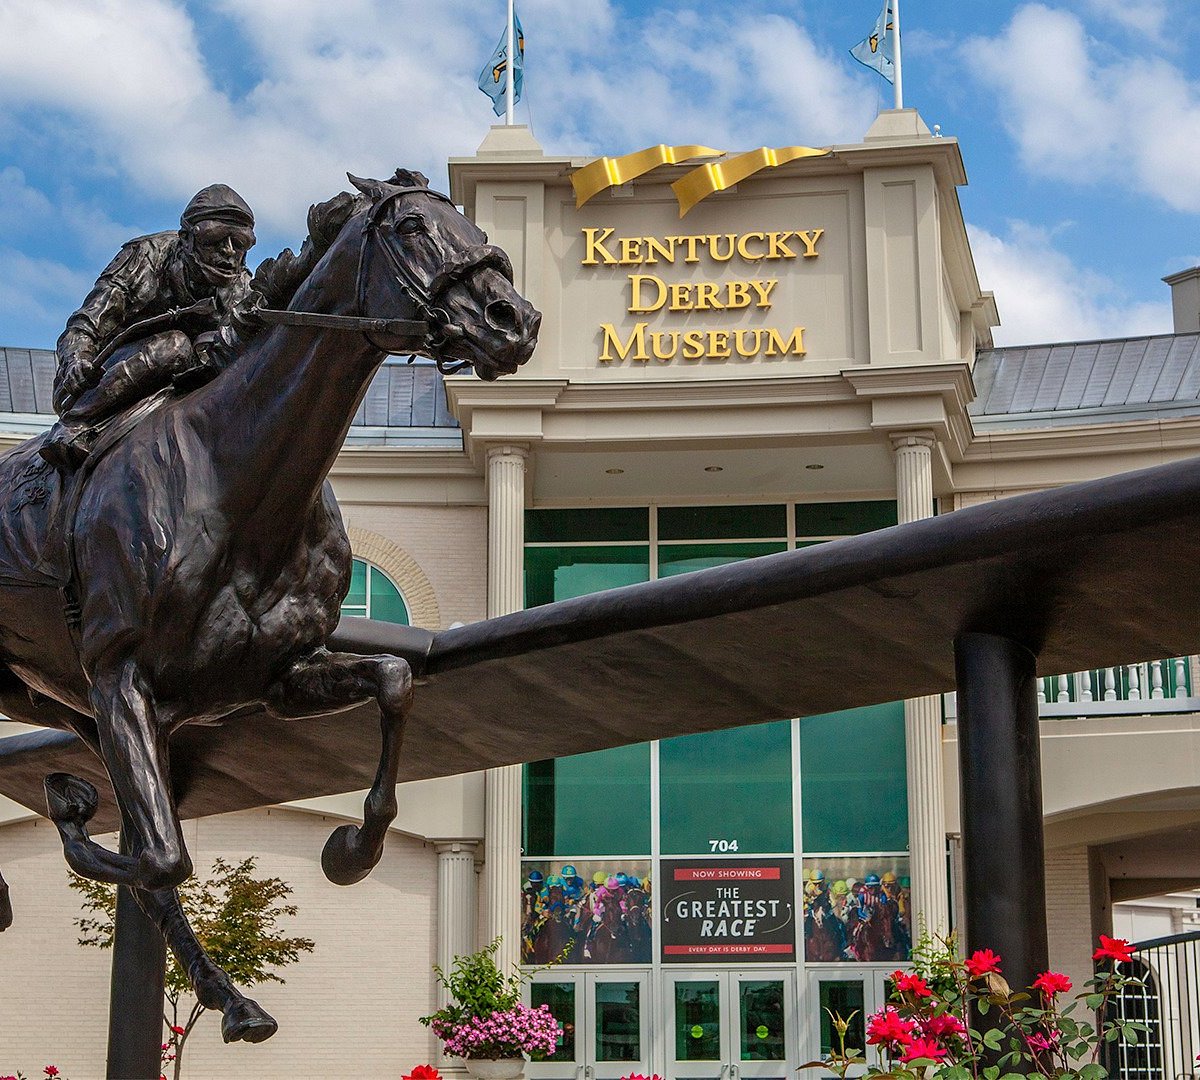 Kentucky Derby Museum Address